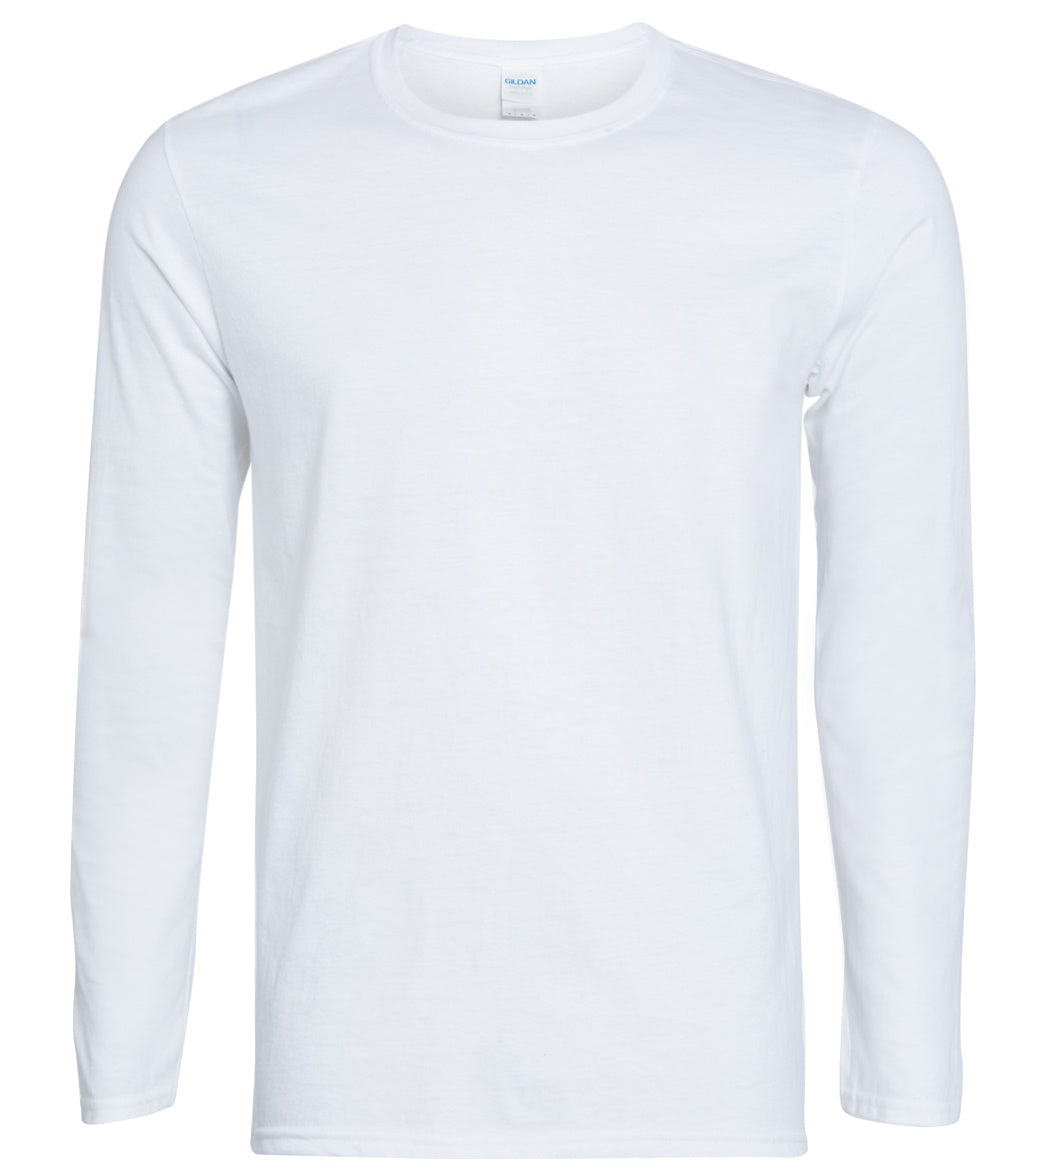 SwimOutlet Unisex Cotton Long Sleeve T-Shirt